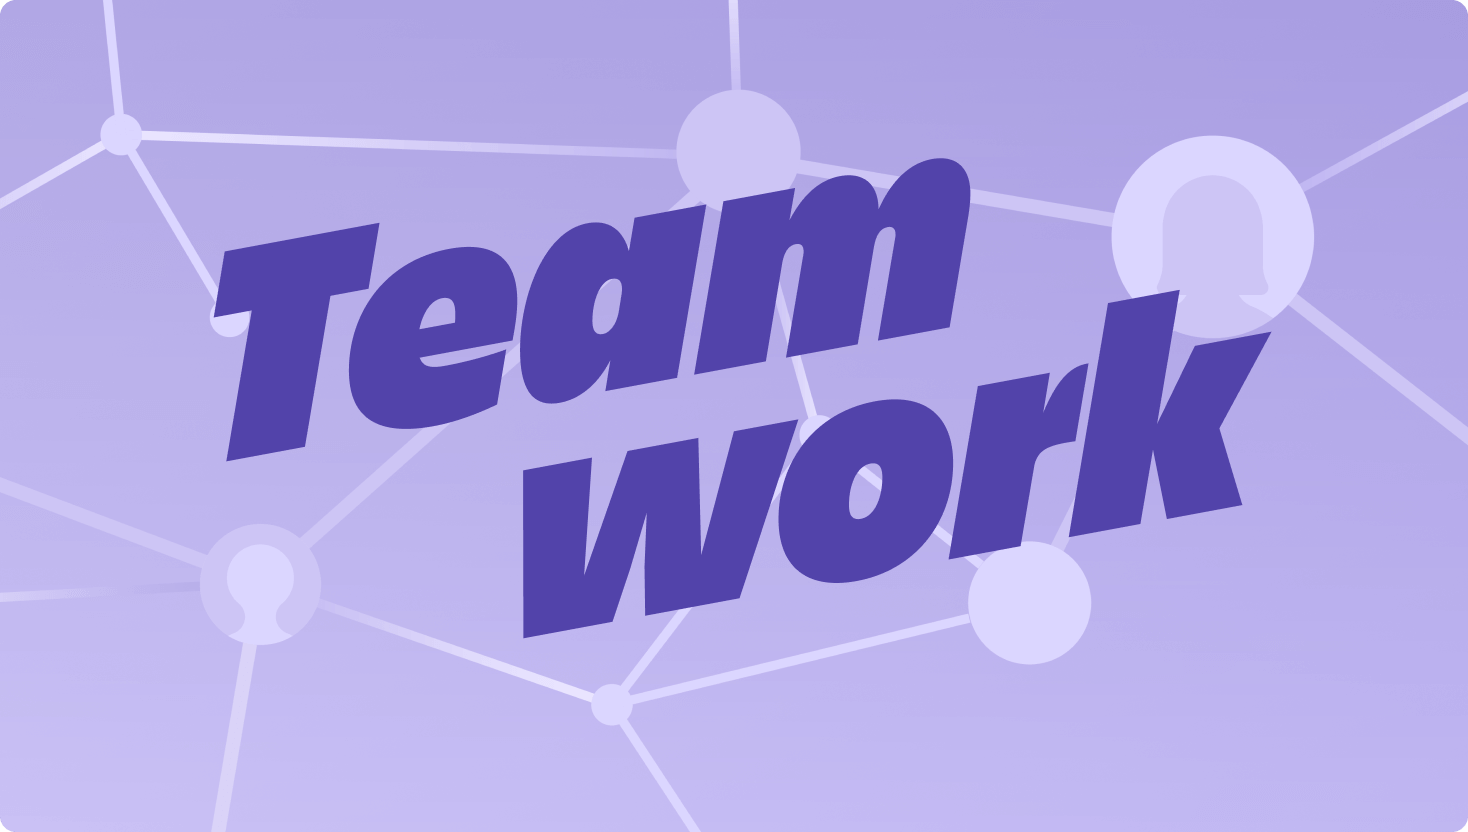 Een paarse afbeelding van verbindende knooppunten in een netwerk, met het woord Teamwork prominent op de voorgrond